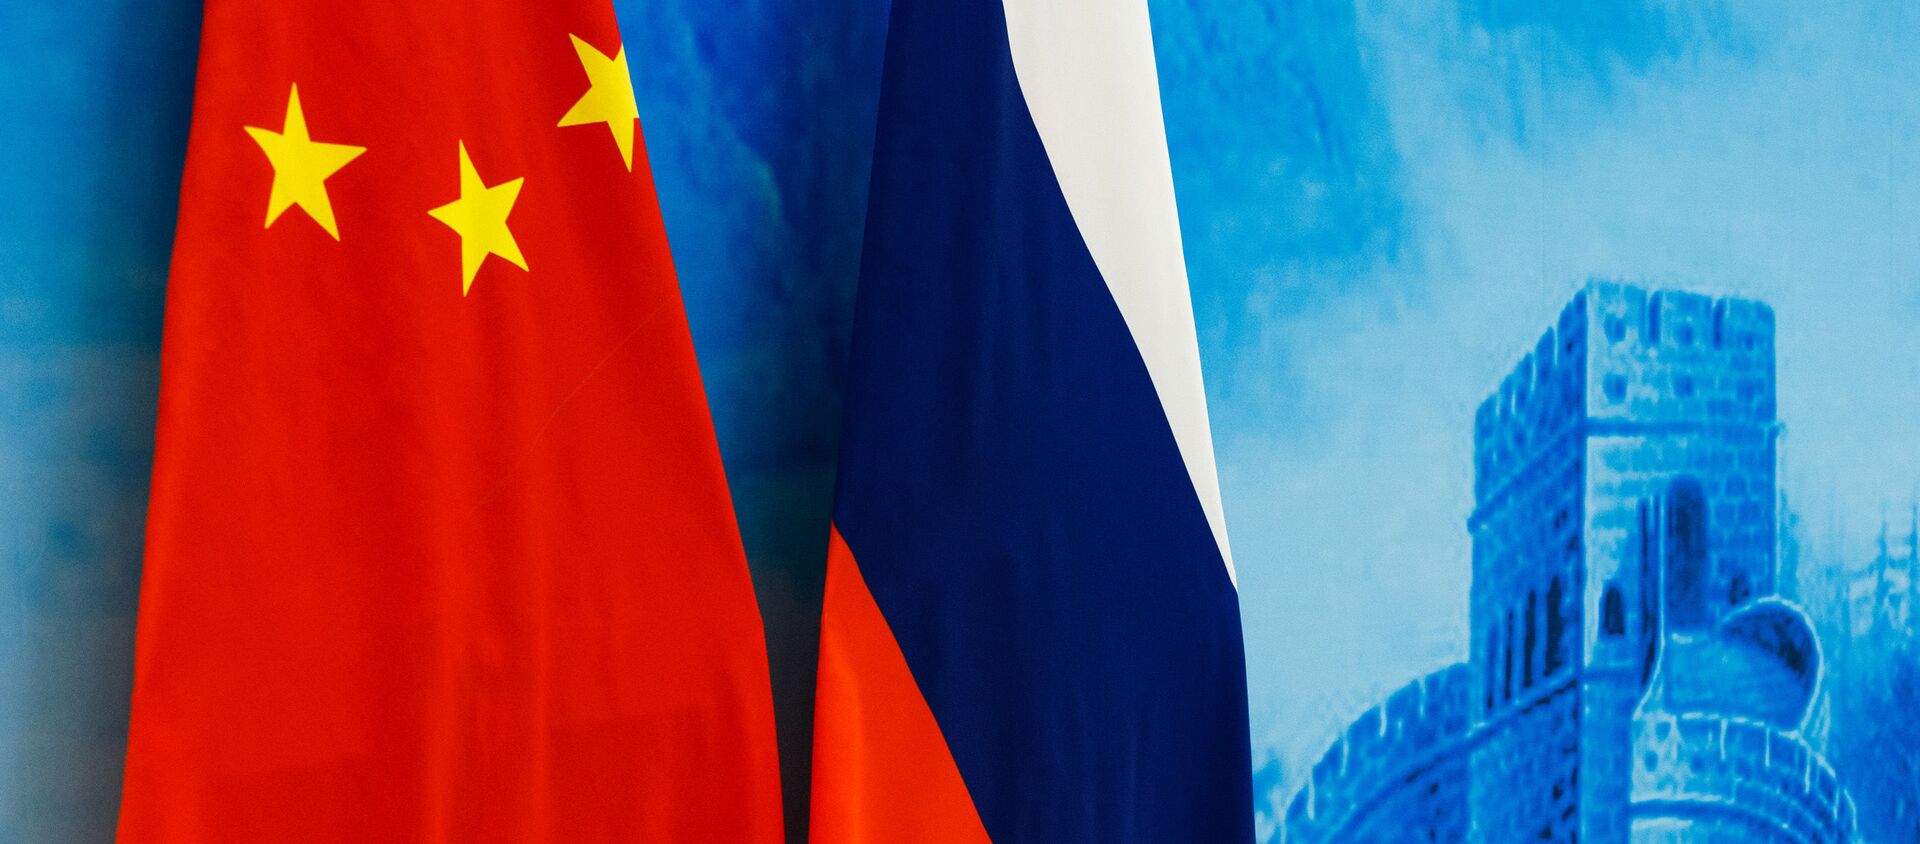 Флаги России и Китая, архивное фото - Sputnik Беларусь, 1920, 30.03.2021